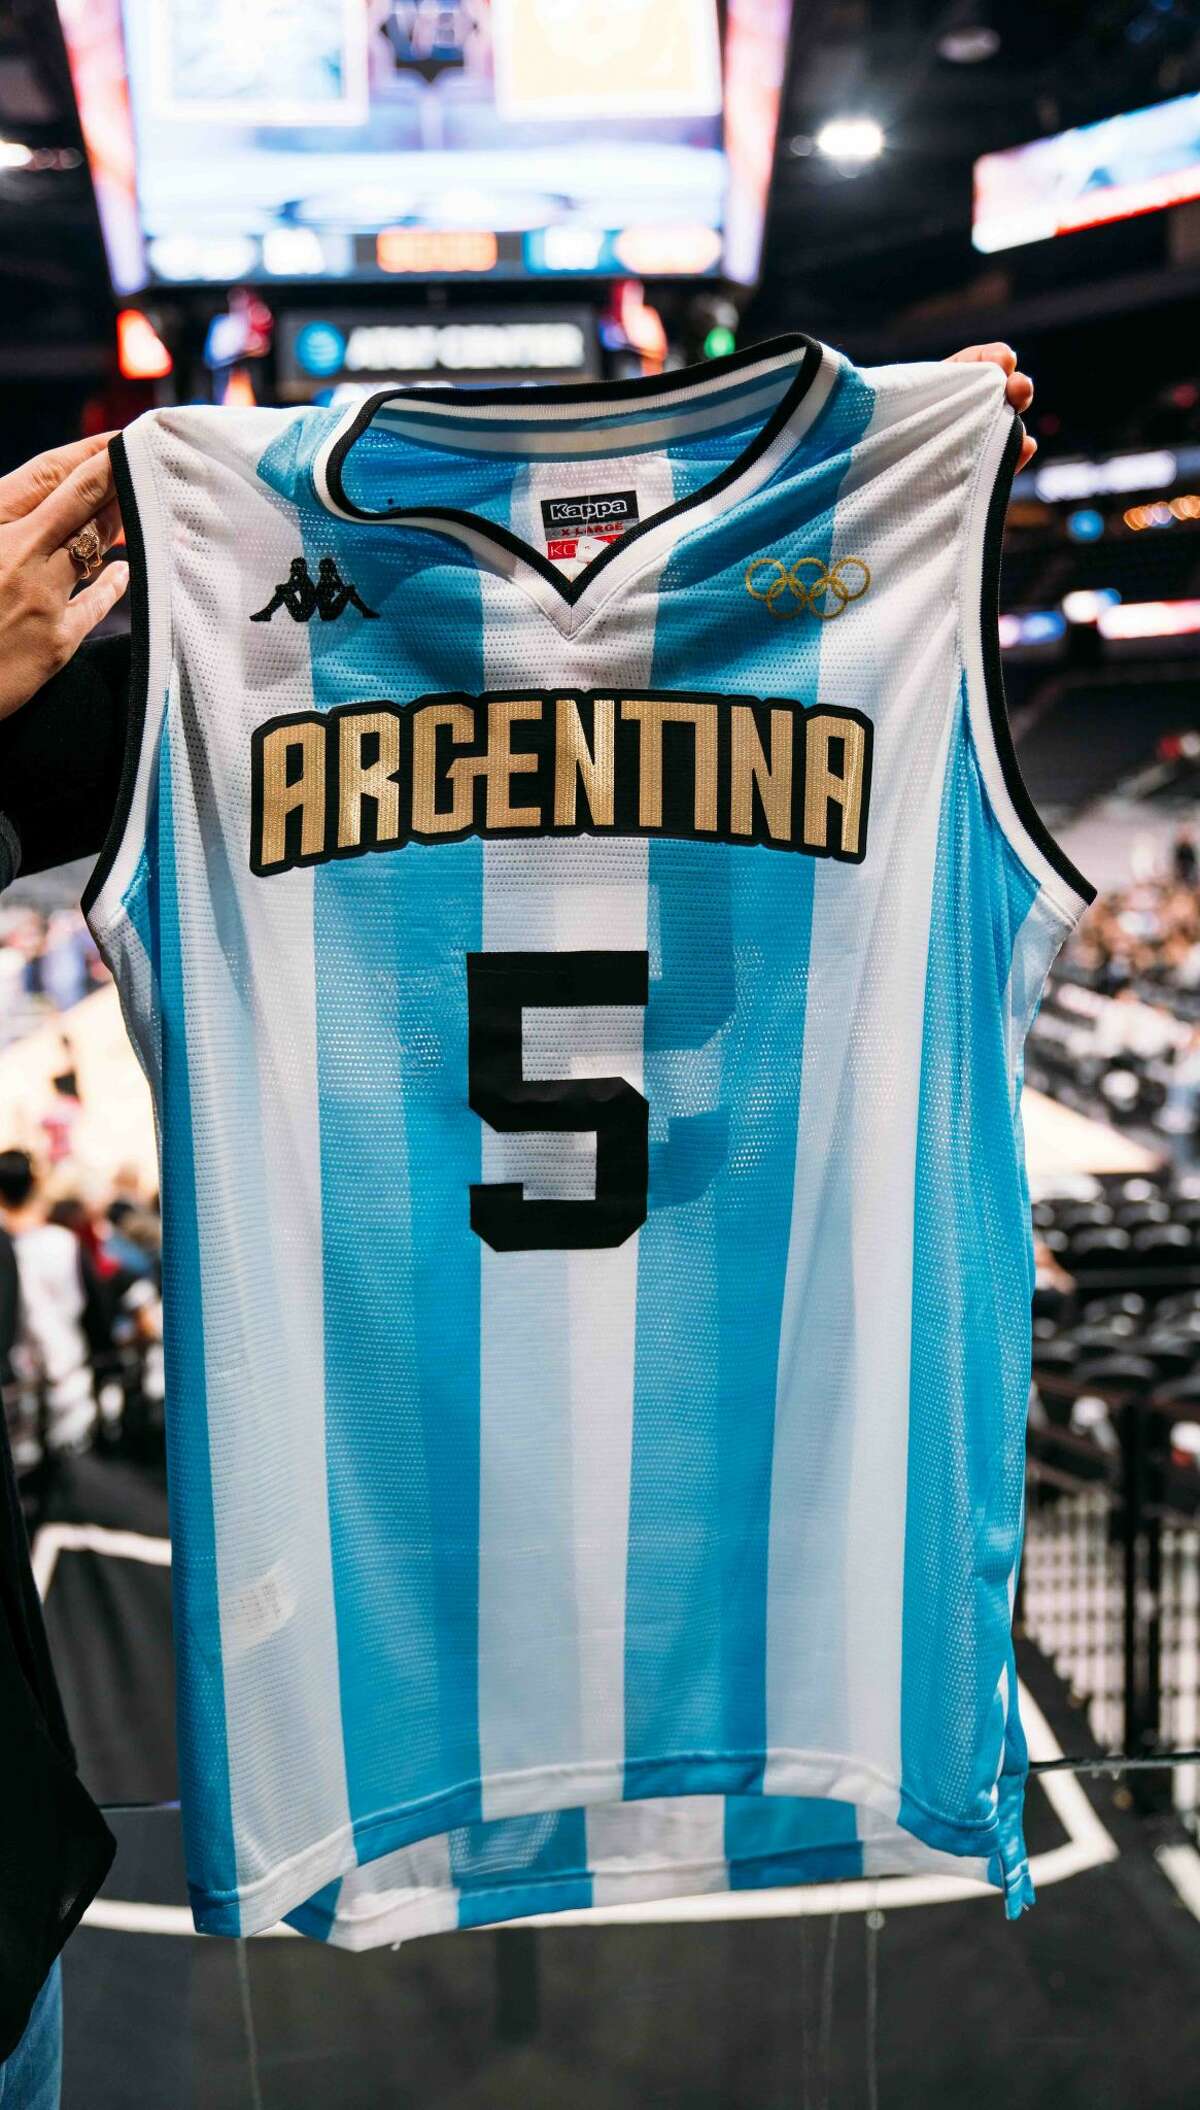 manu argentina jersey